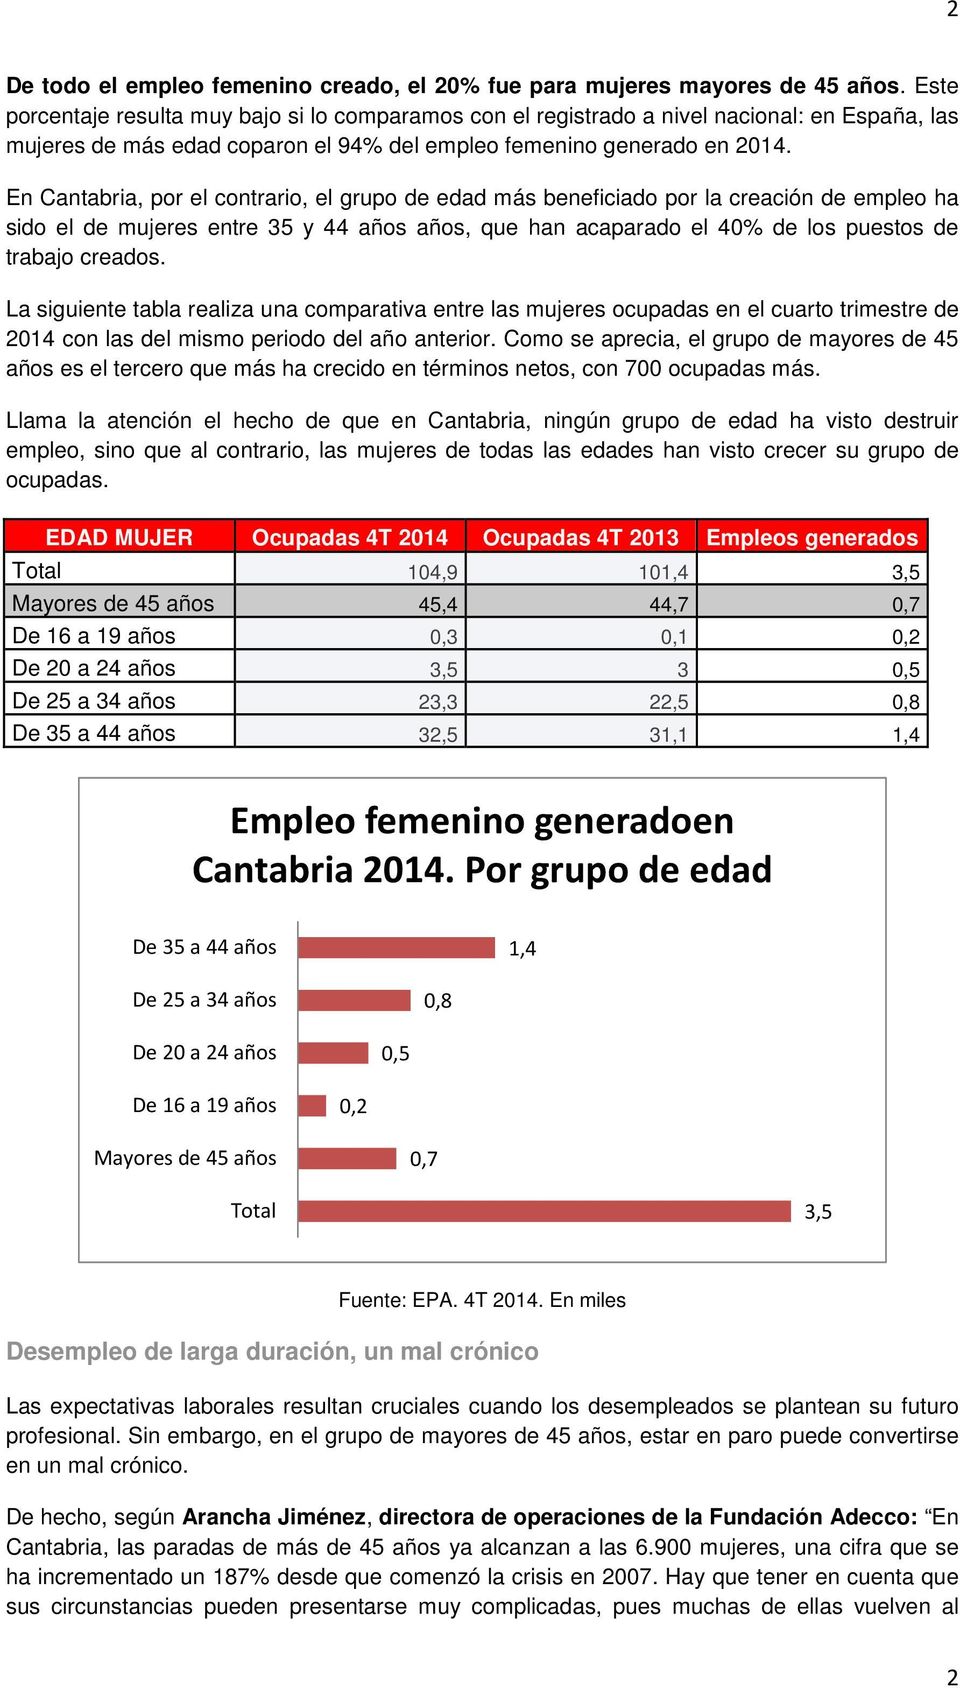 En Cantabria, por el contrario, el grupo de edad más beneficiado por la creación de empleo ha sido el de mujeres entre 35 y 44 años años, que han acaparado el 40% de los puestos de trabajo creados.